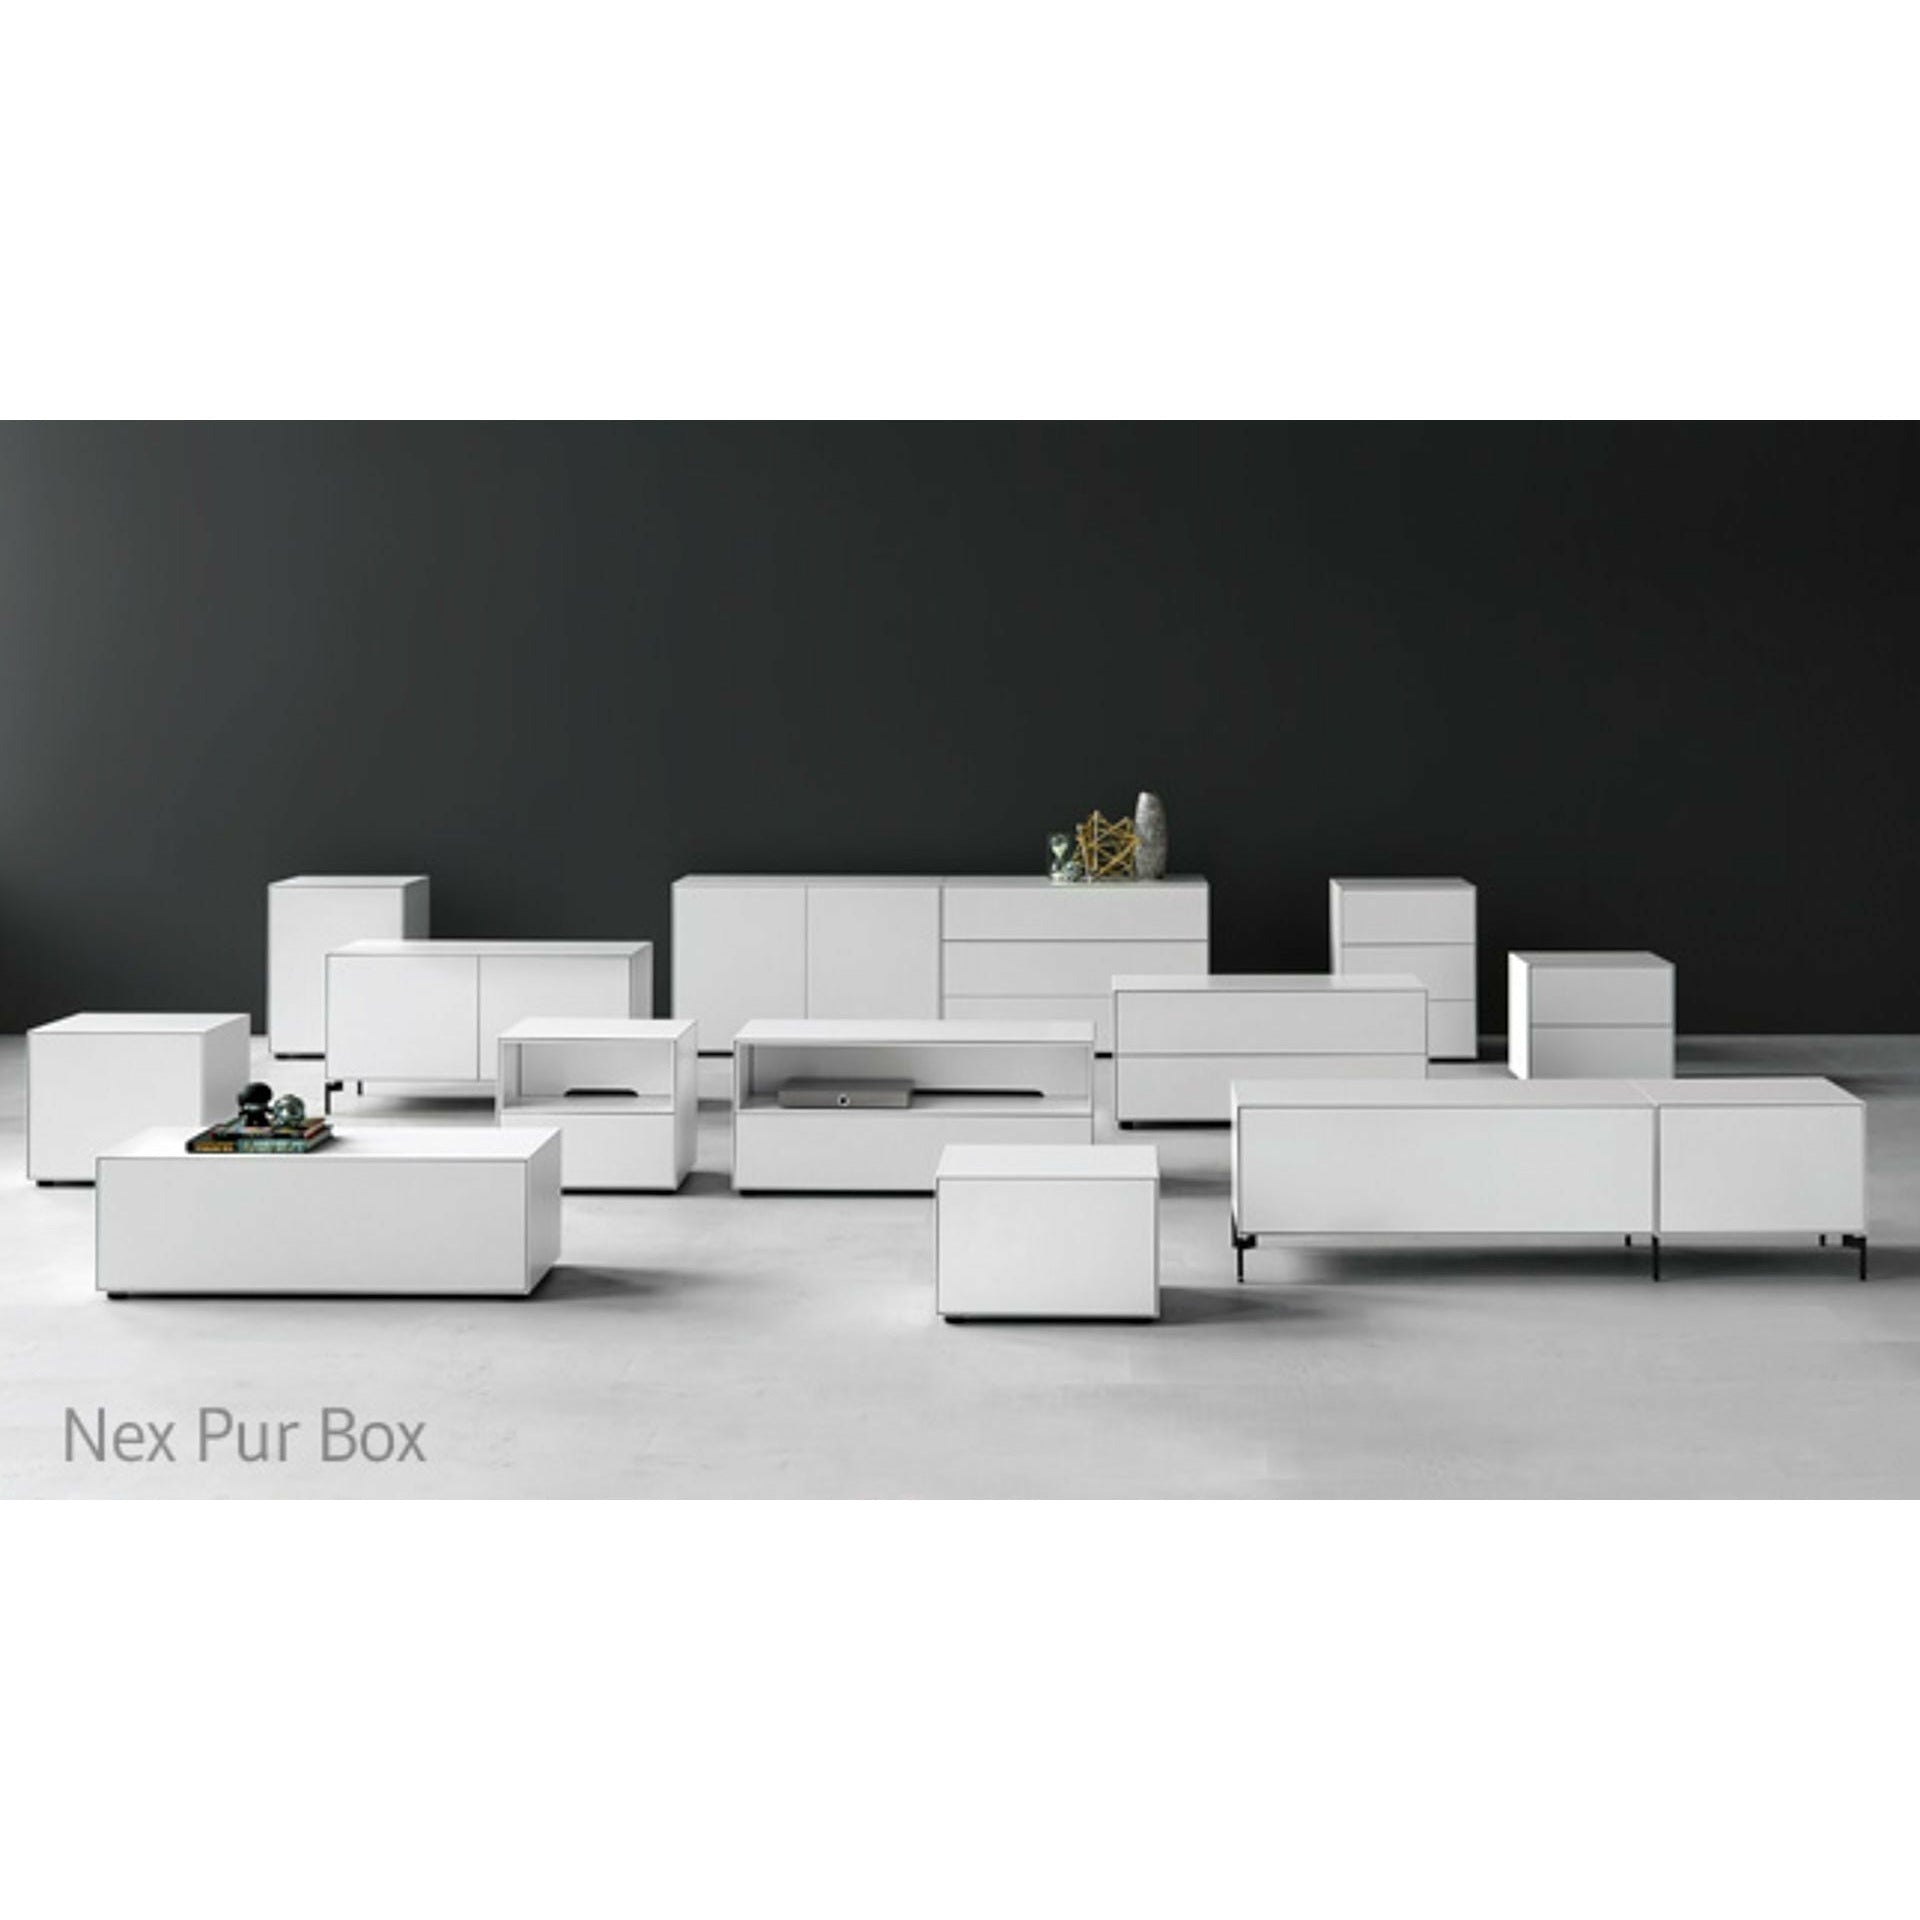 piure nex pur盒抽屉/门HX W 50x180厘米，2架/1架架子